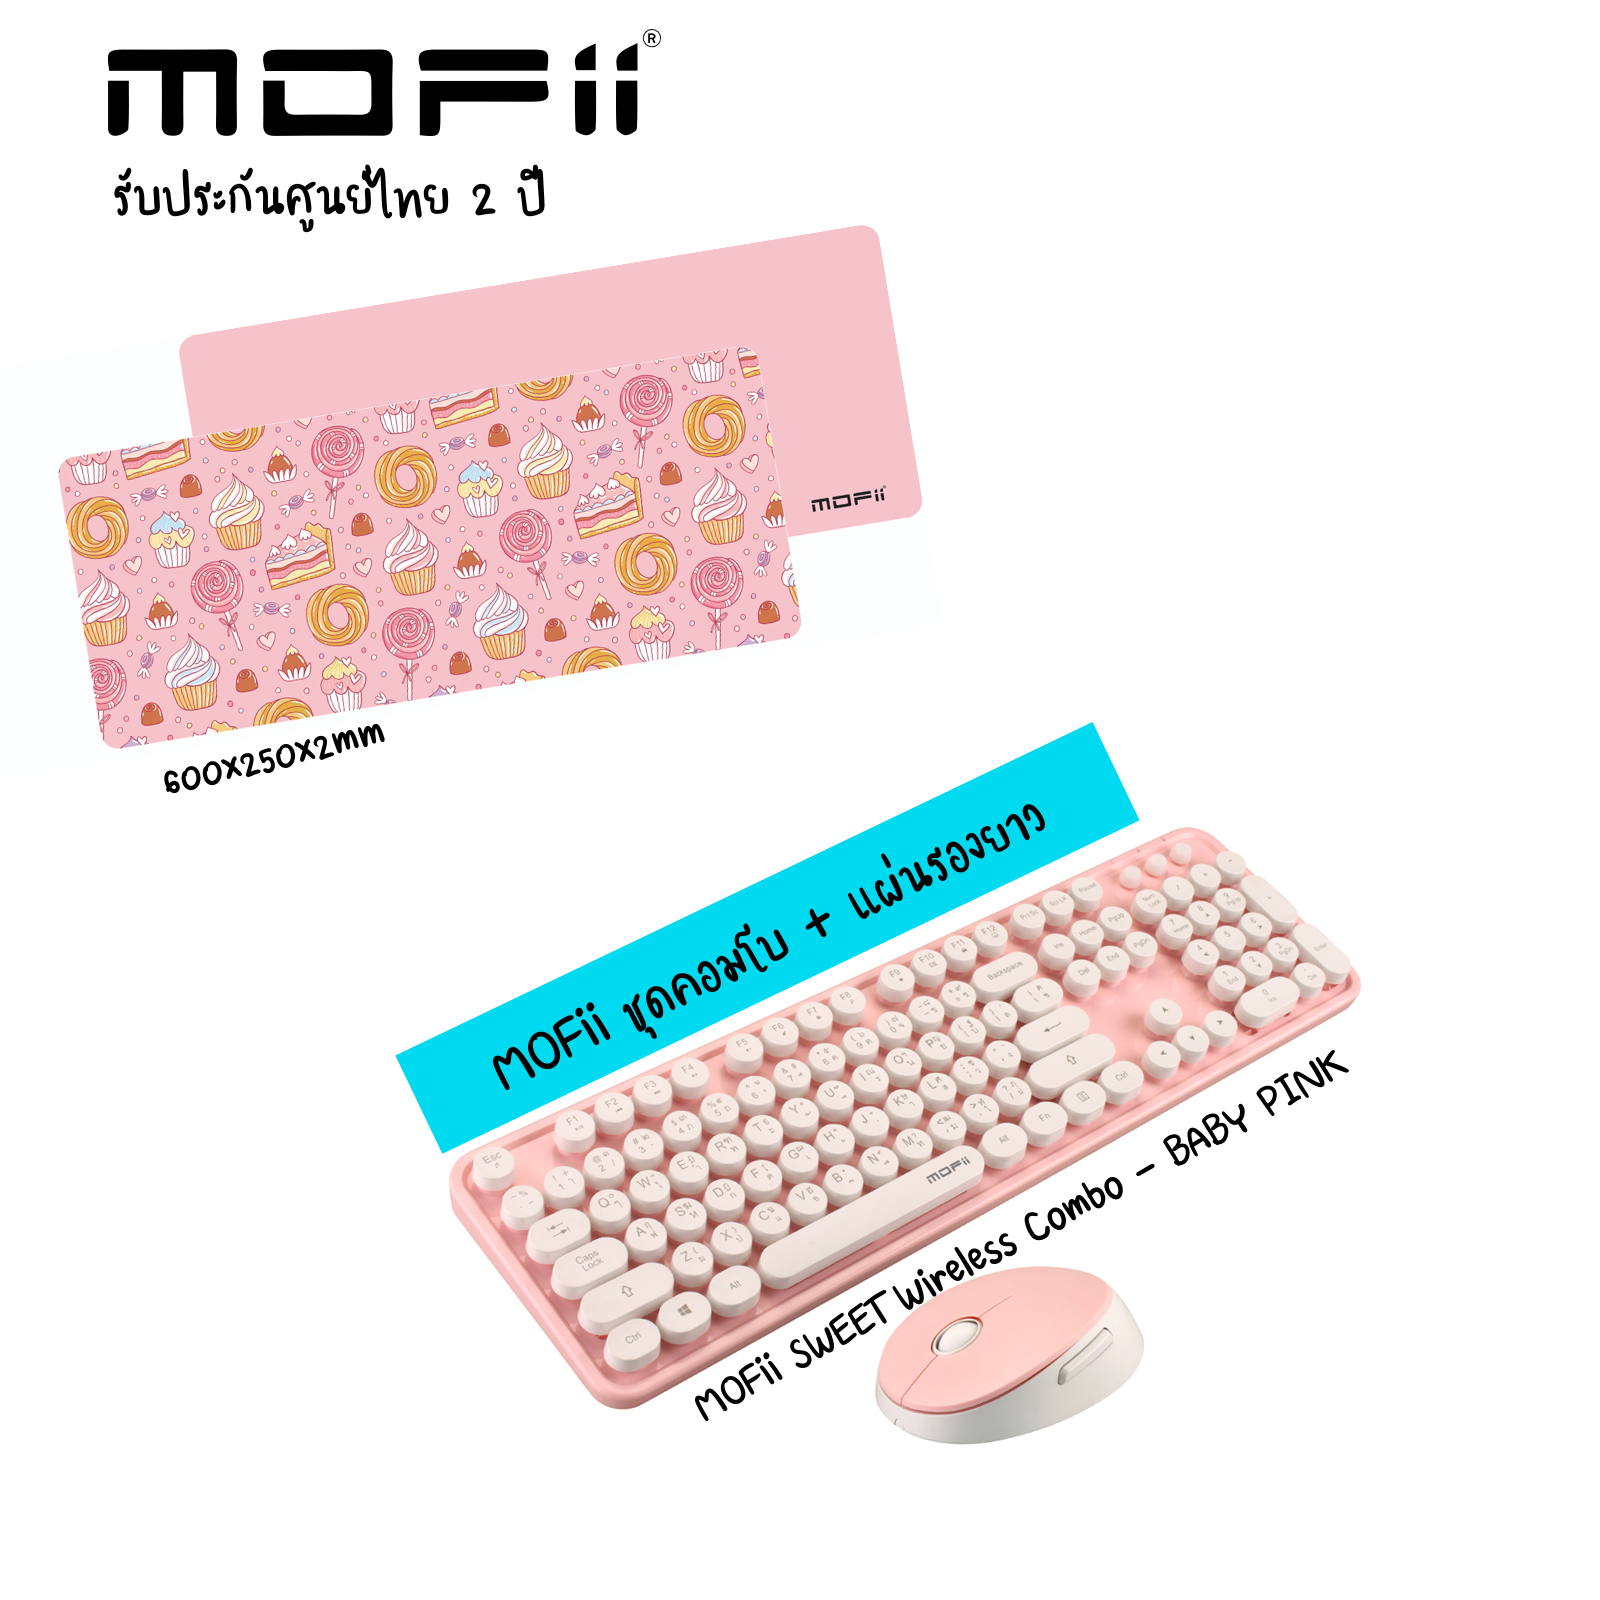 (ชุดคีย์บอร์ดเม้าส์ + แผ่นรองยาว) MOFii SWEET Wireless Combo Set with MOFii TORTILLA 2-sided LARGE Mousepad (Sweet+Tortilla)